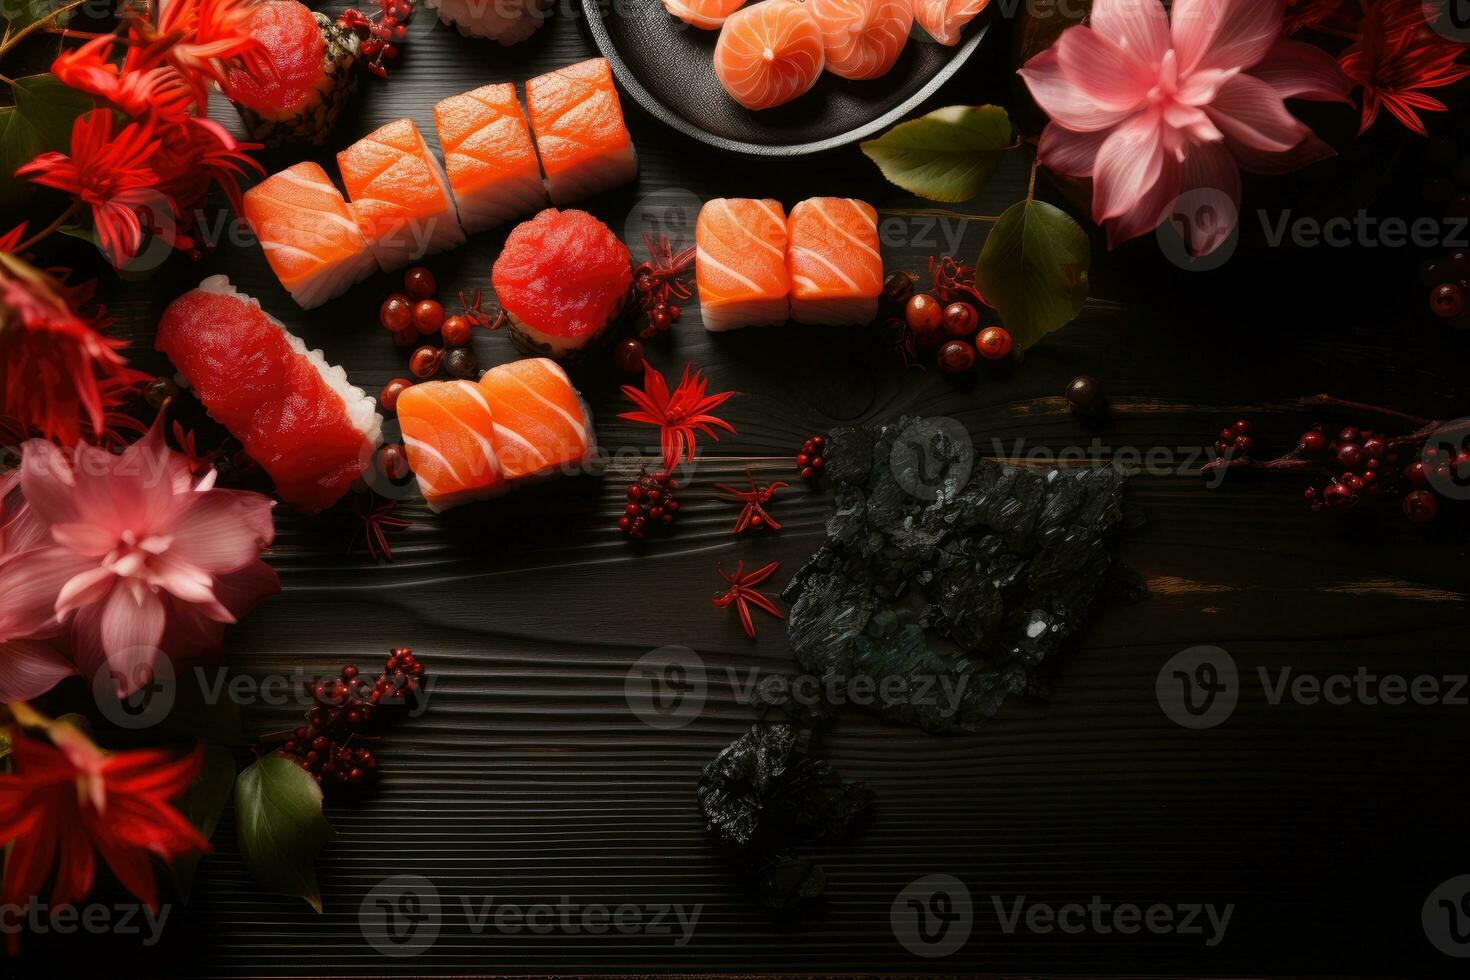 ai generato Sushi giapponese cibo isolato nel cucina tavolo professionale pubblicità cibo fotografia foto